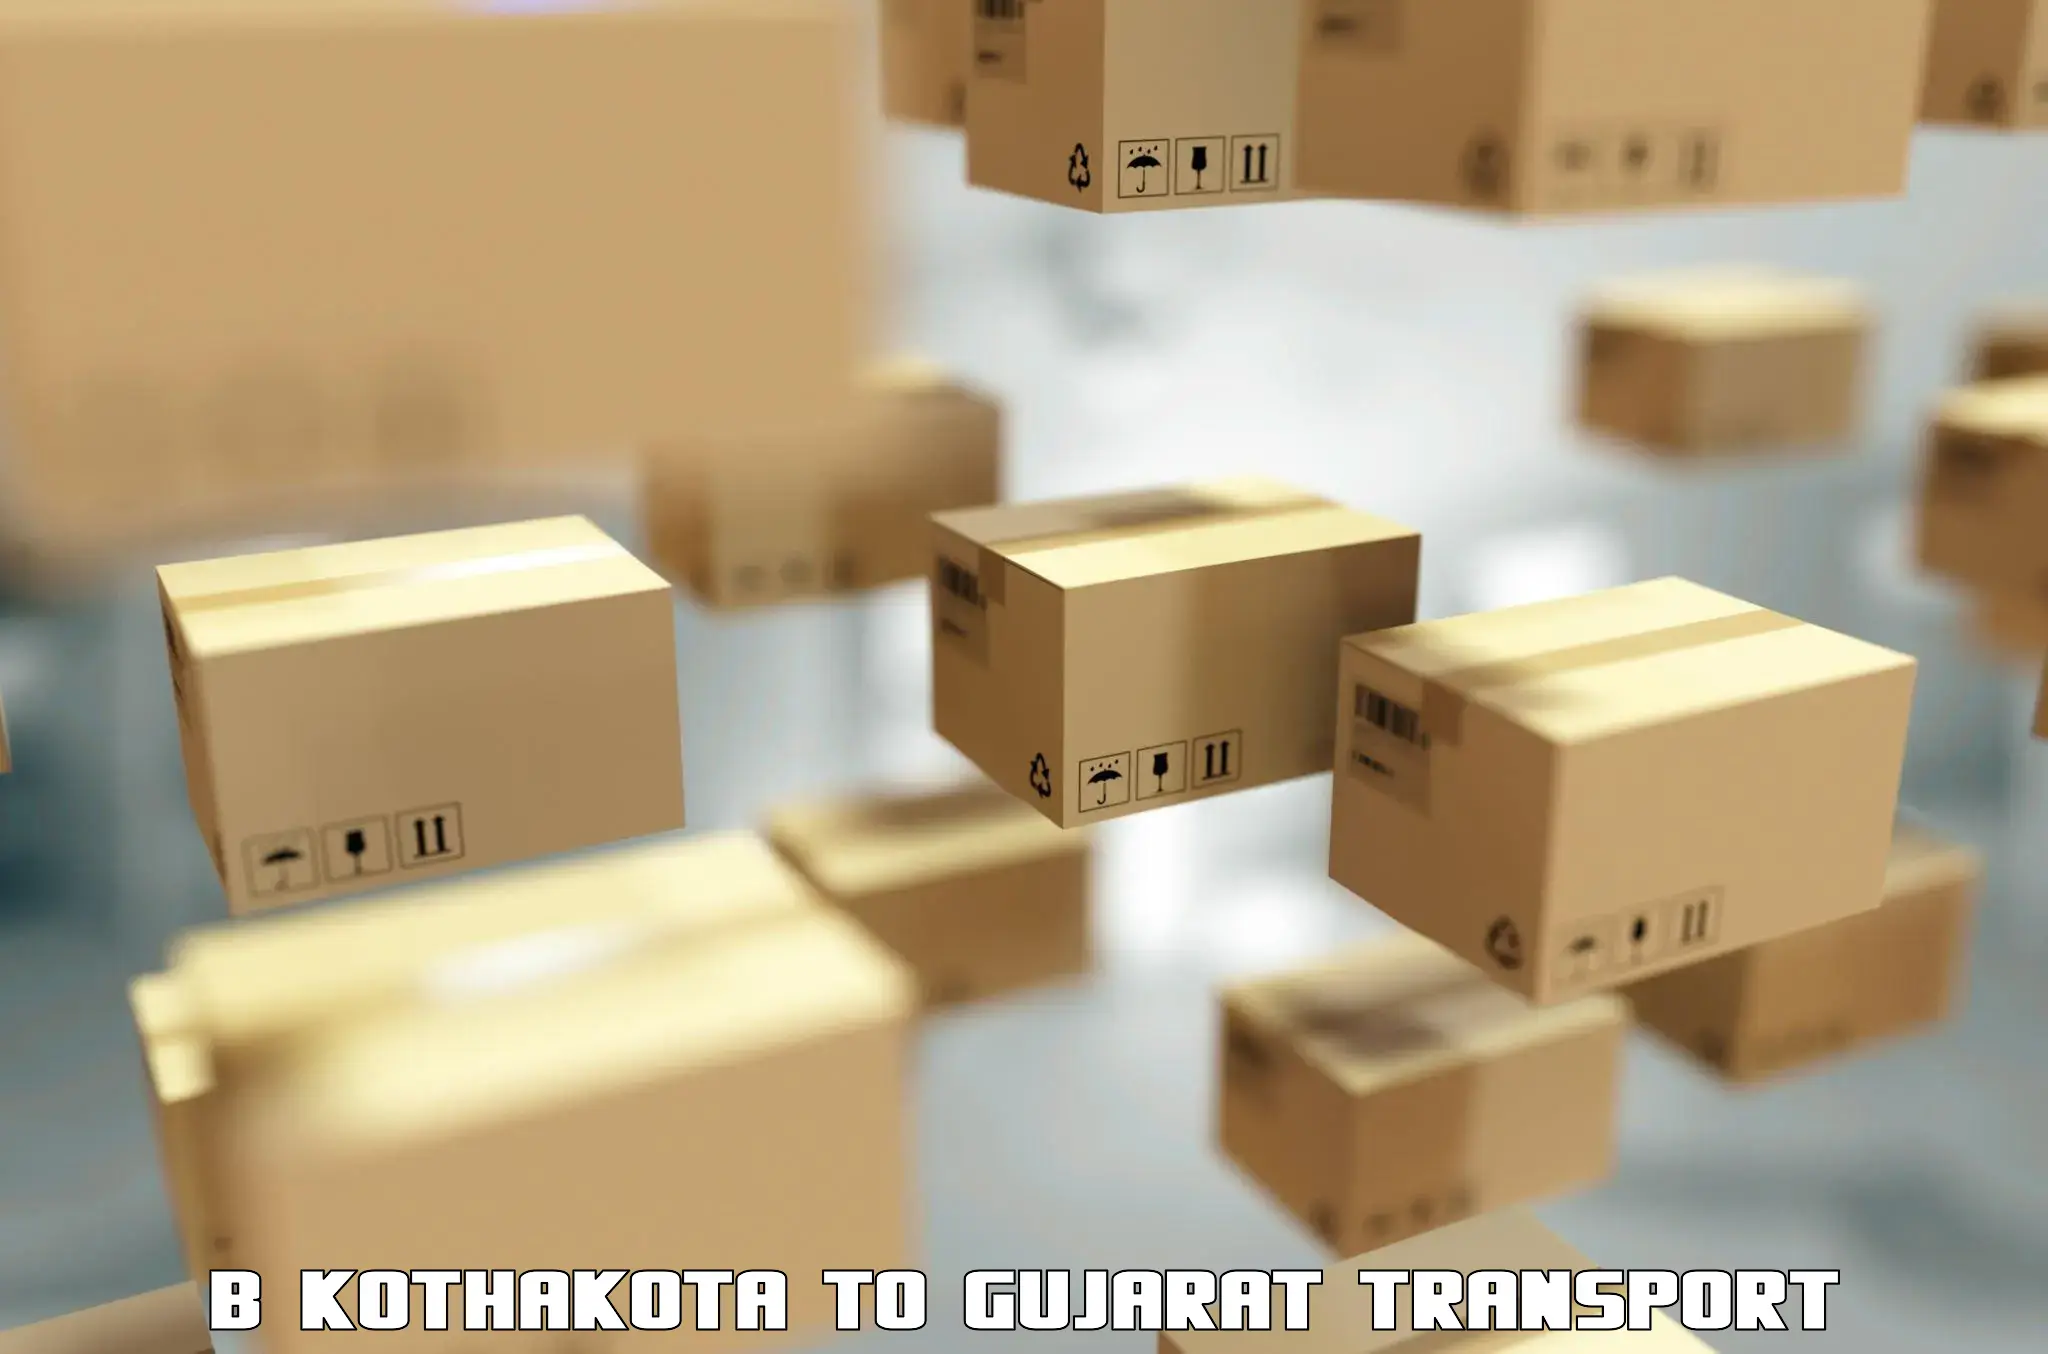 Furniture transport service B Kothakota to Girgadhada